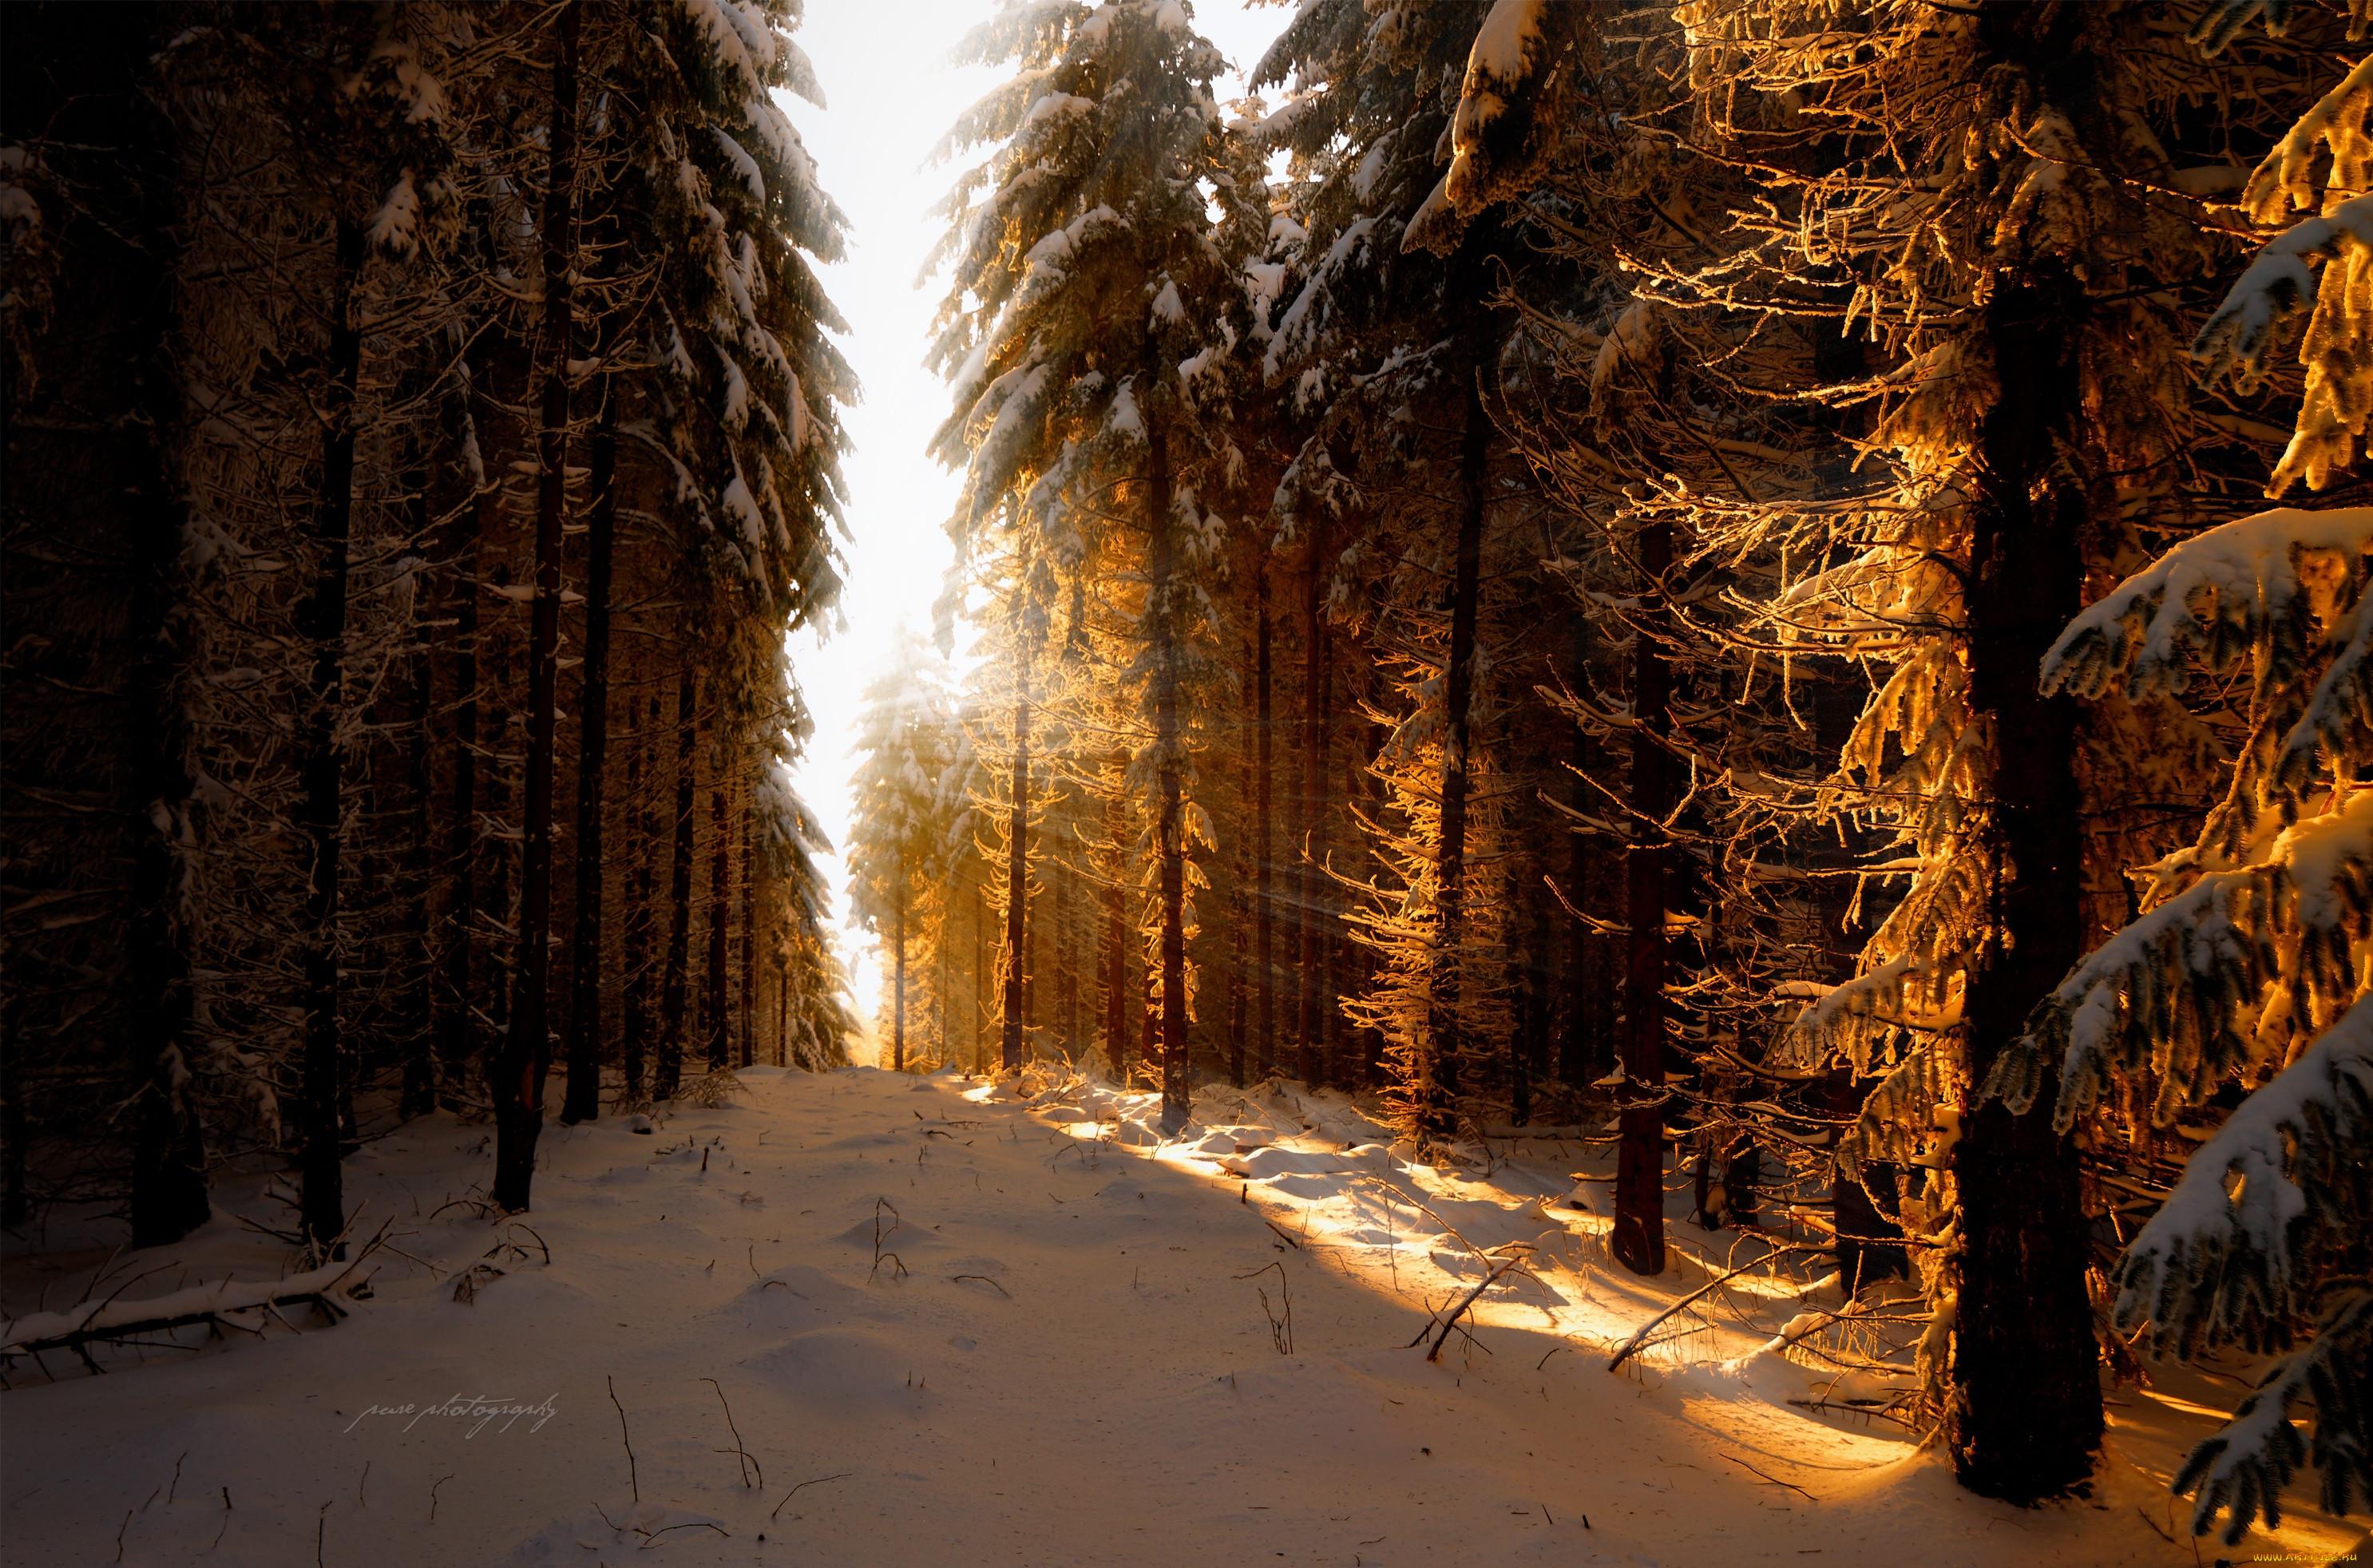 картинки : пейзаж, дерево, природа, лес, филиал, снег, зима, мороз, Погода,  Рождество, время года, метель, Декабрь, естественная среда, Февраль,  Январь, Замораживание, окружающая среда, зимняя буря 1920x1260 - - 1138529  - красивые картинки - PxHere